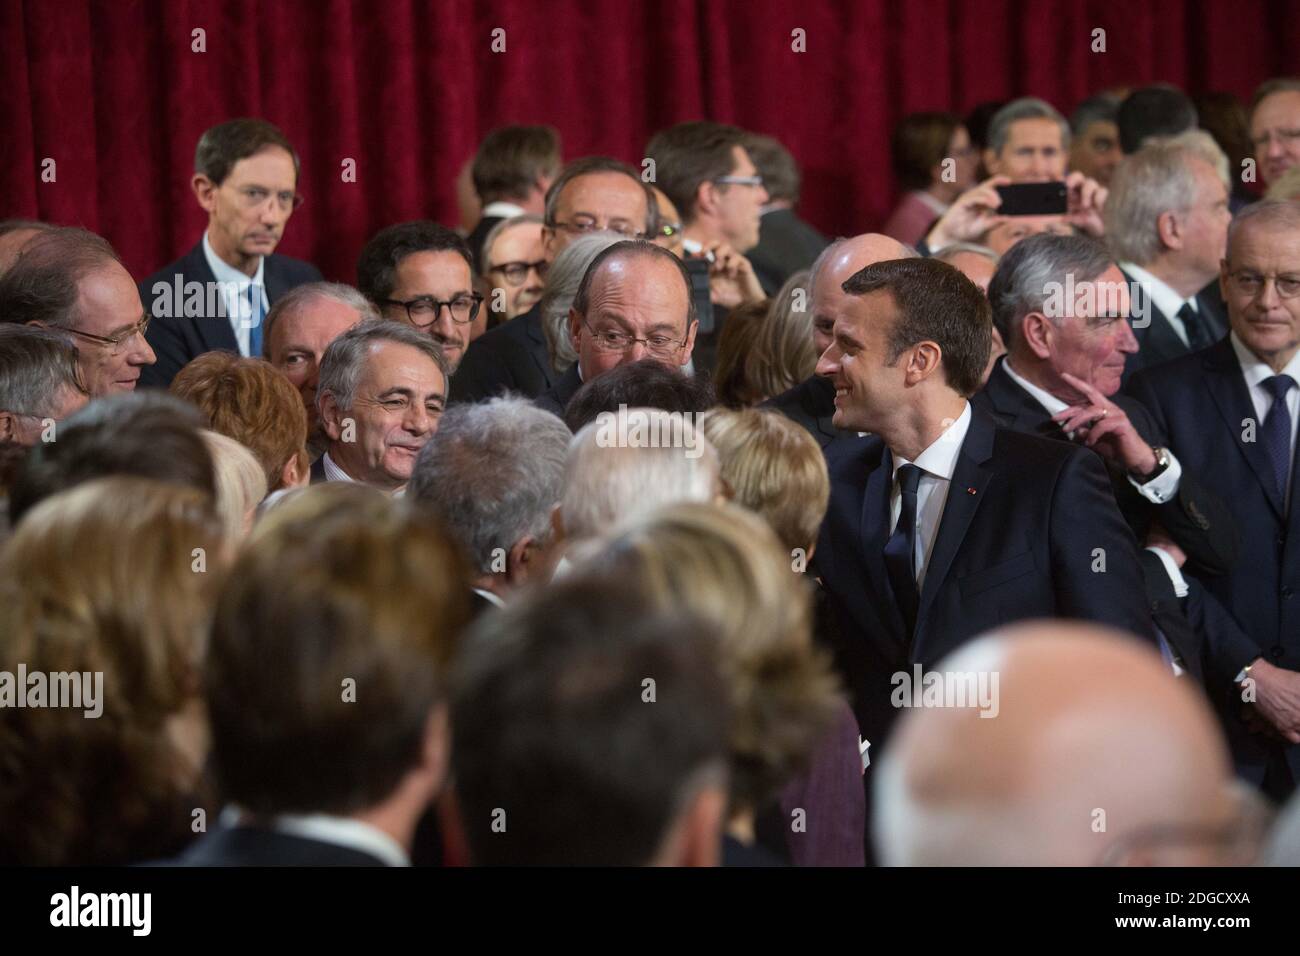 Der französische Präsident Emmanuel Macron während seiner feierlichen Amtseinführung als französischer Präsident in der Salle des Fetes des Präsidentenpalastes Elysee in Paris, Frankreich, am 14. Mai 2017. Foto von Hamilton/Pool/ABACAPRESS.COM Stockfoto